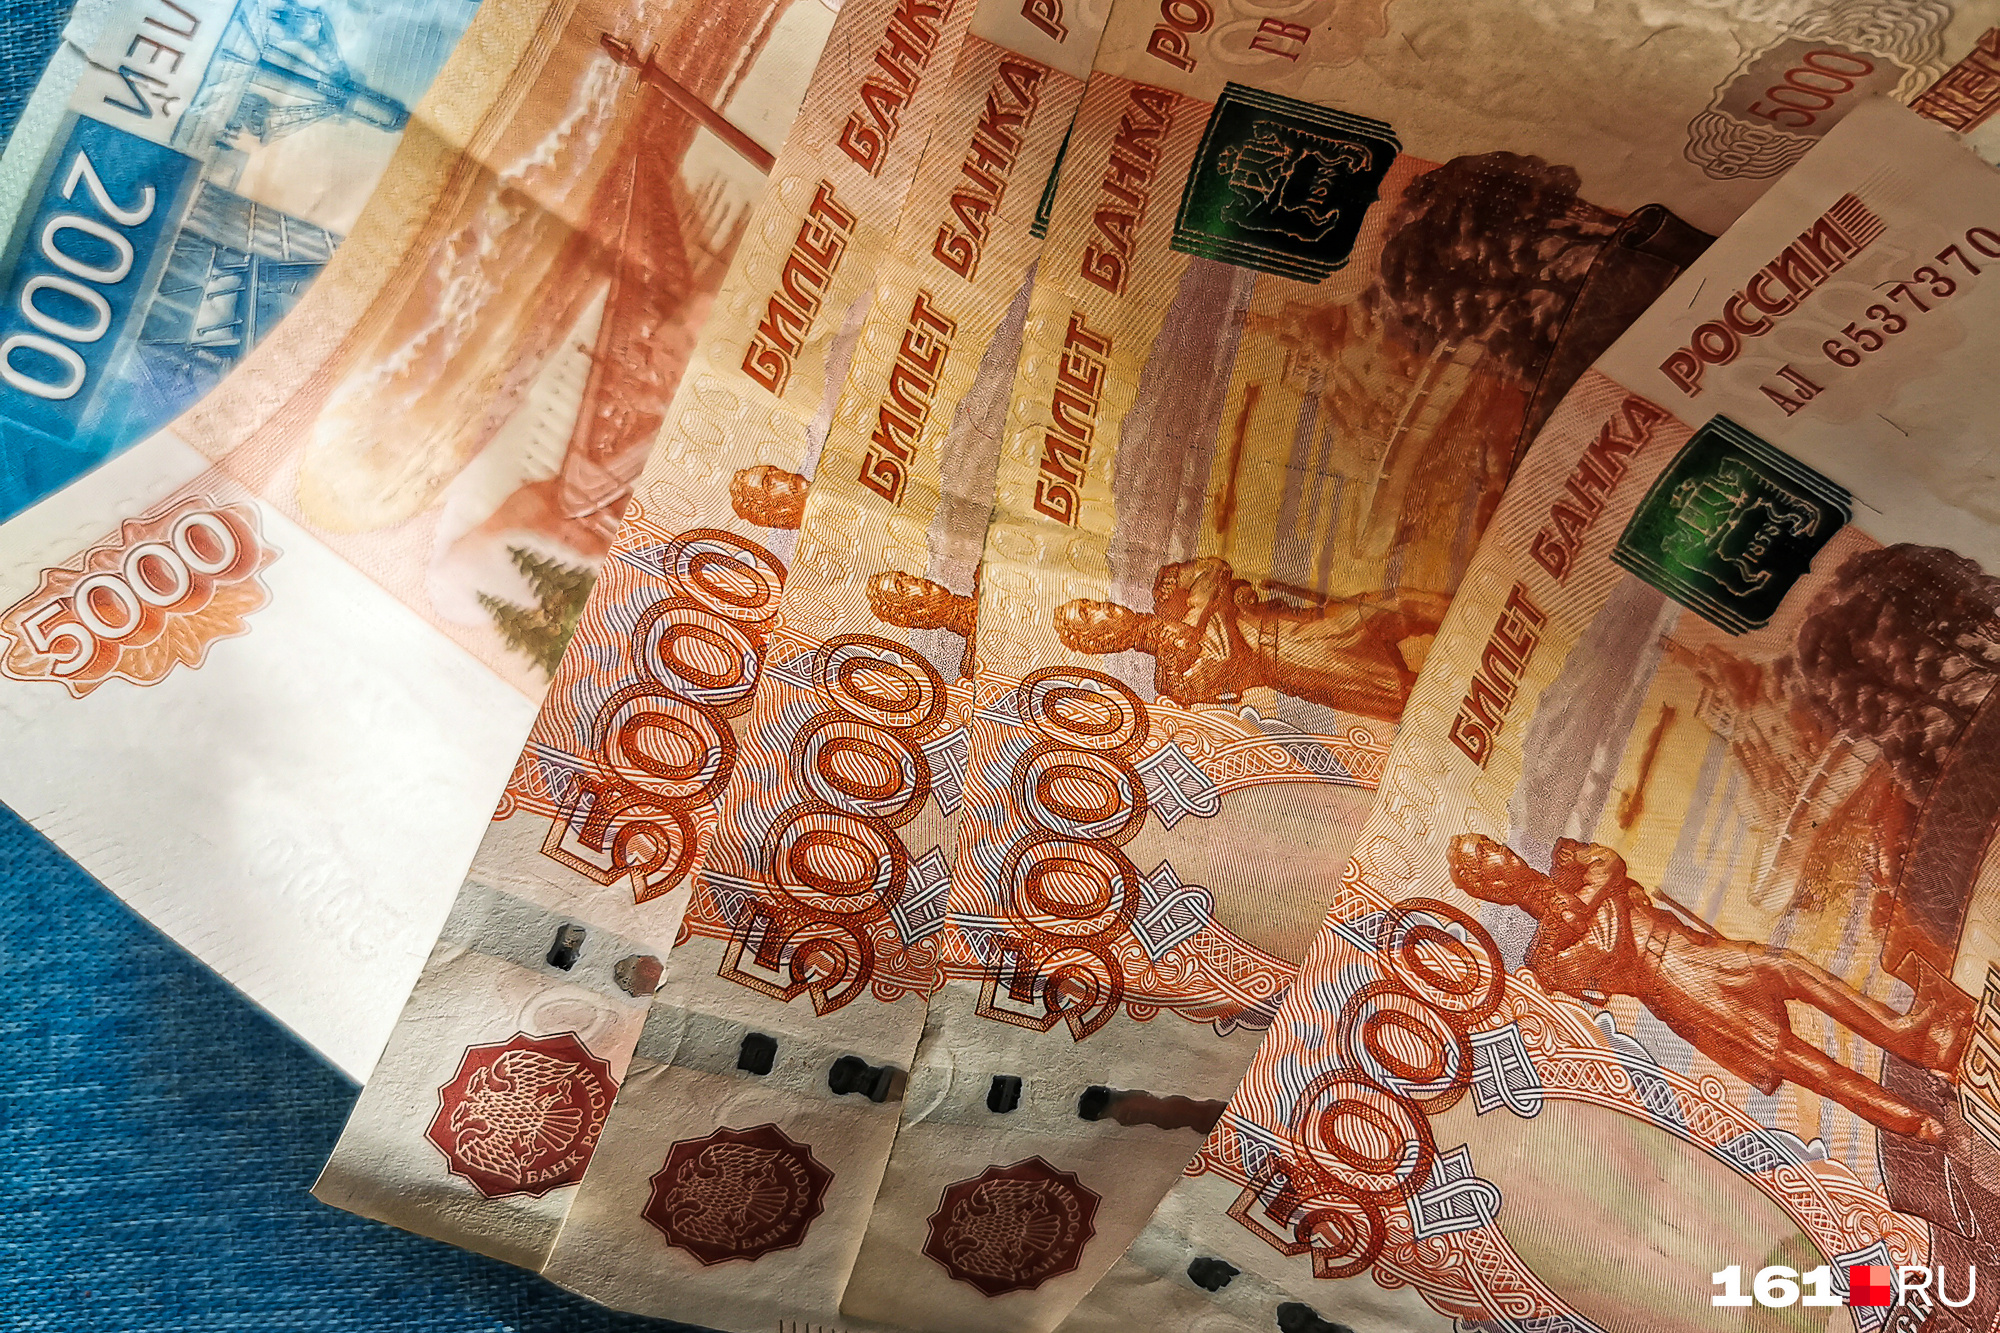 Читинец взял полмиллиона рублей в кредит по чужому паспорту